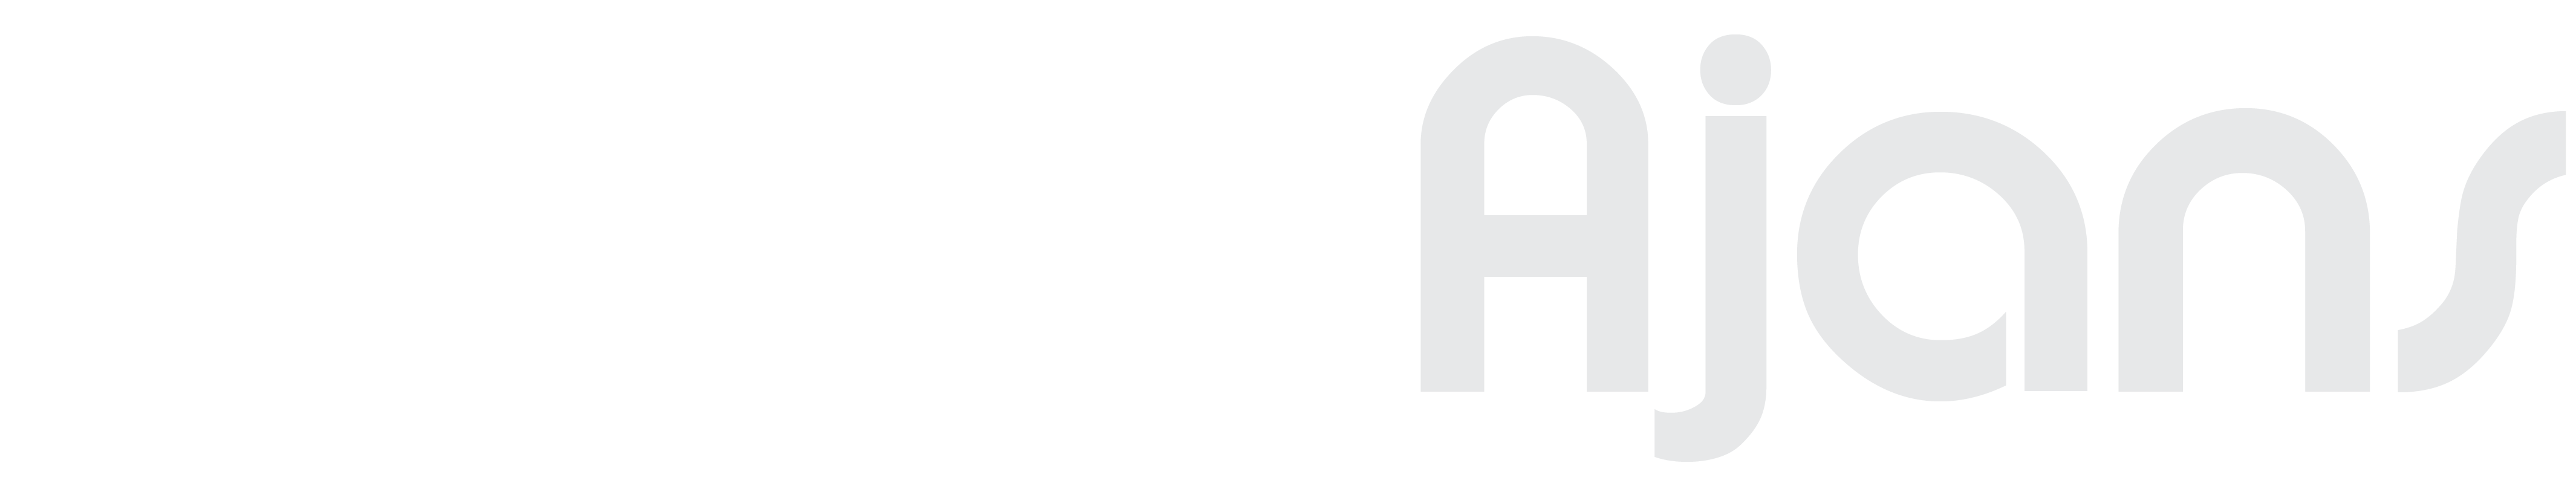 Ender Ajans White Logo